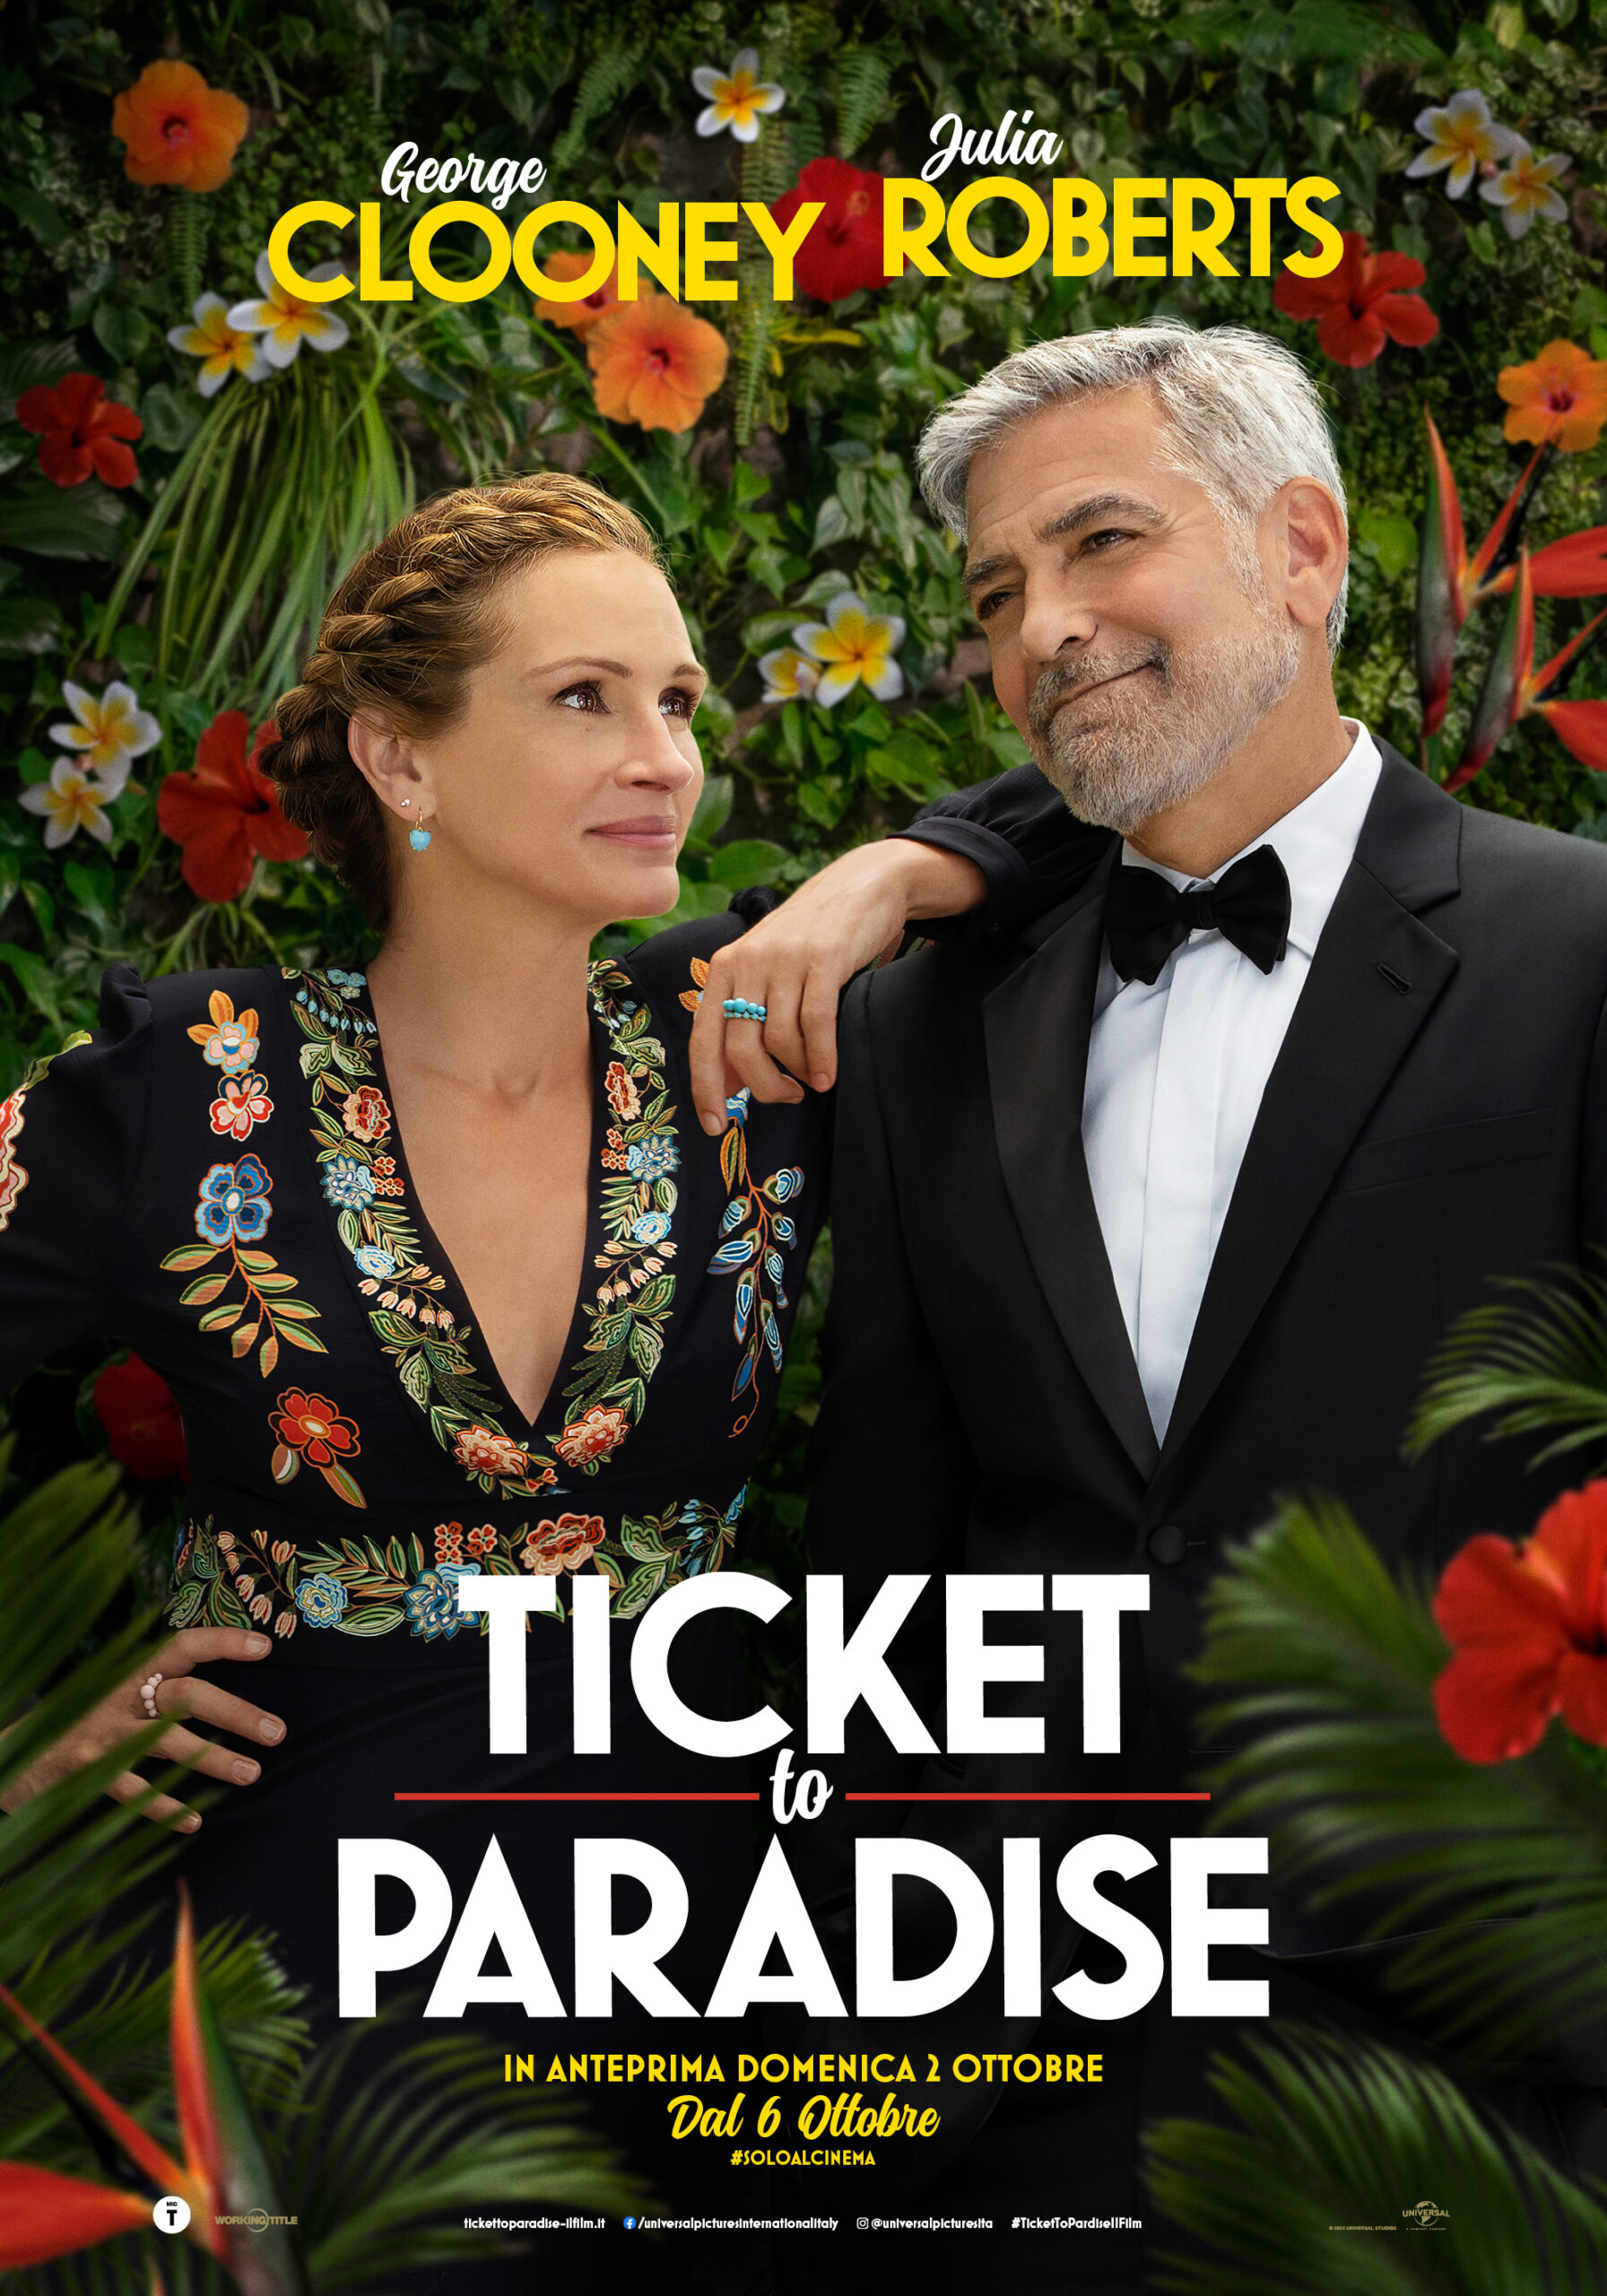 La locandina del film Ticket to Paradise, diretto da Ol Parker, con George Clooney e Julia Roberts